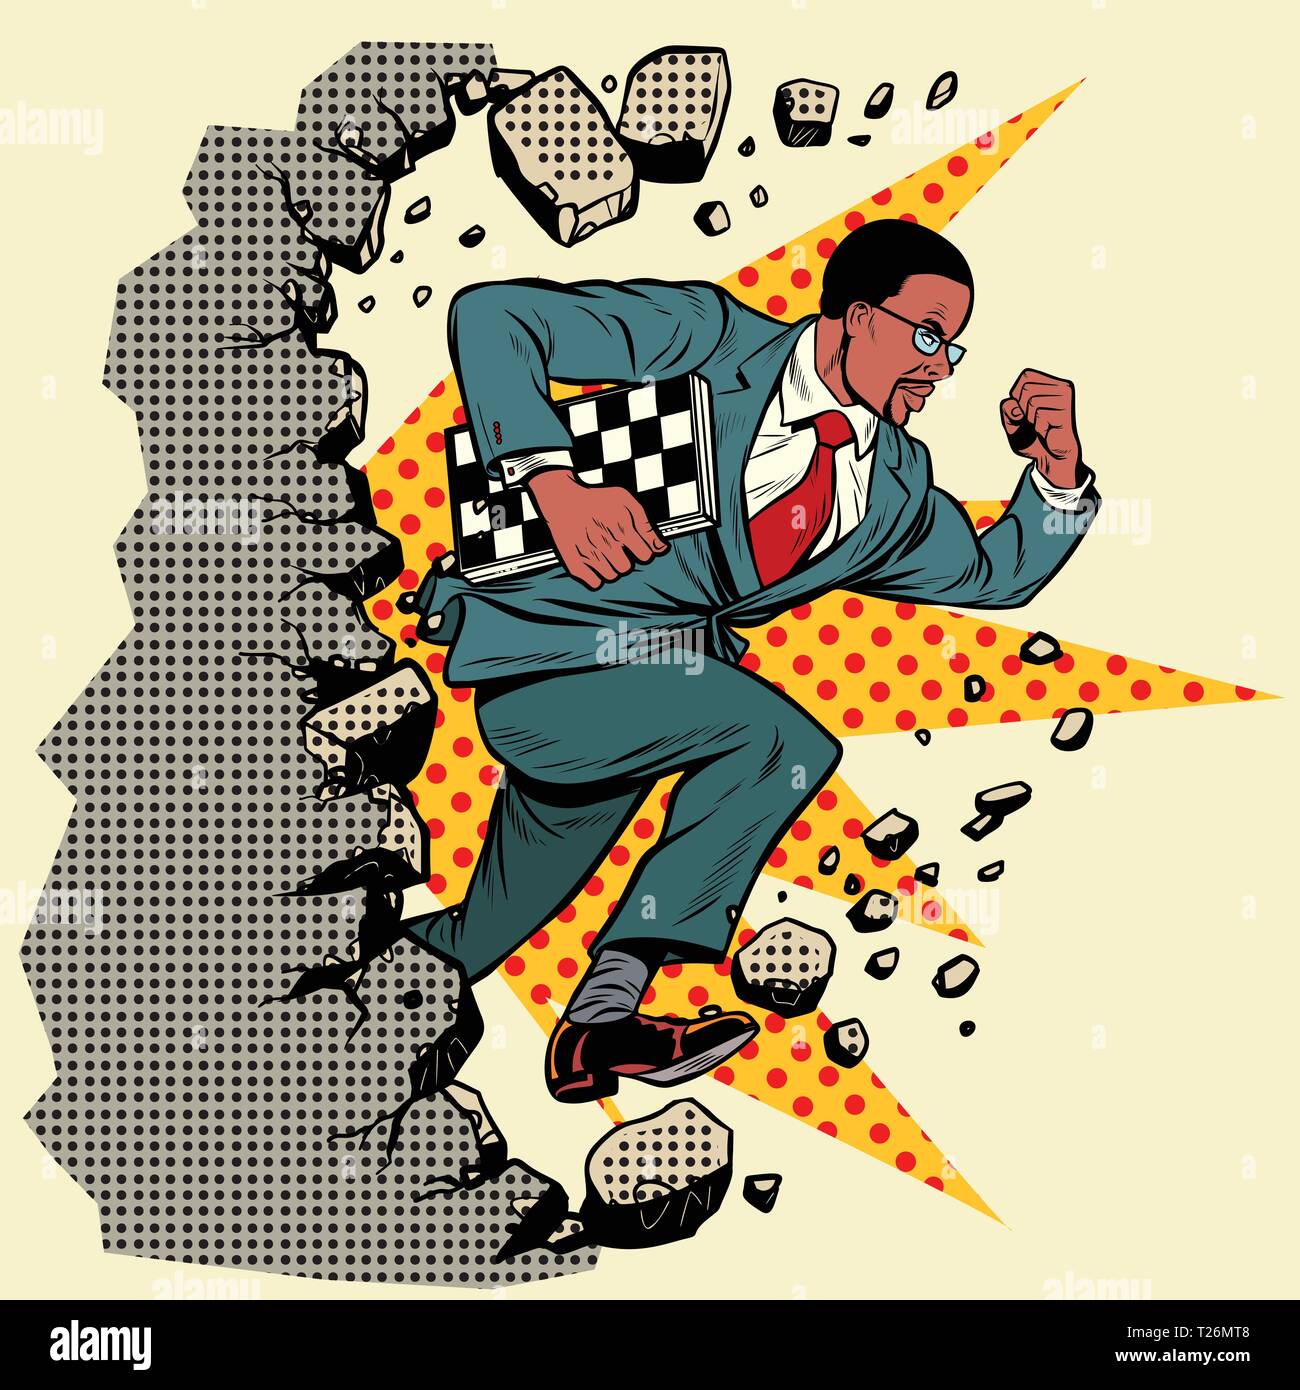 Afrikanische schach Großmeister bricht eine Mauer, zerstört die Stereotypen. Vorwärts bewegen, persönliche Entwicklung. Pop Art retro Vektor illustration Vintage kitsch Stock Vektor